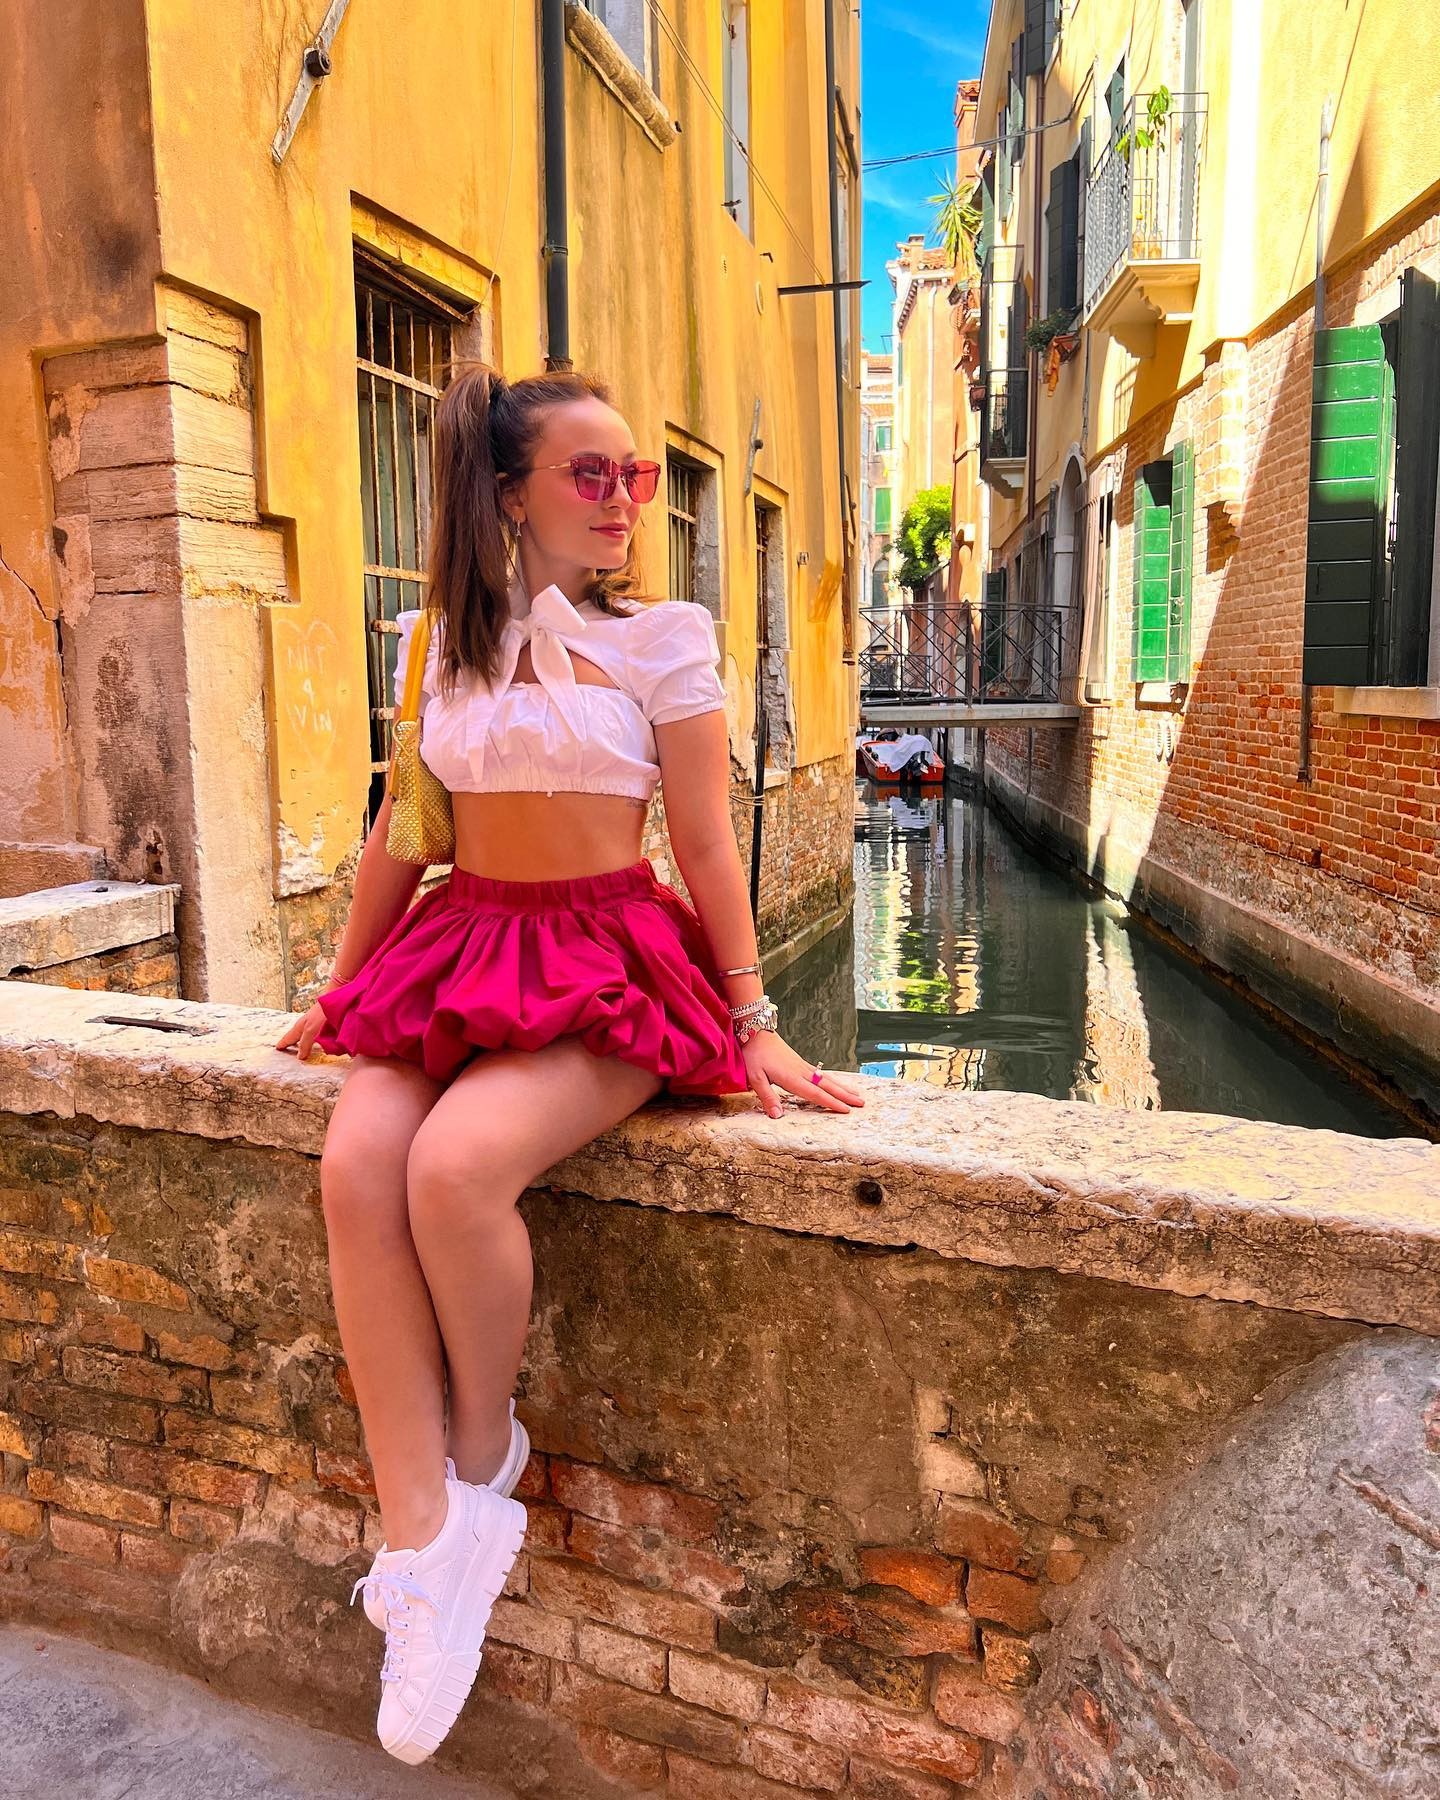 Larissa Manoela encanta com álbum de fotos em Veneza (Foto: Reprodução / Instagram)